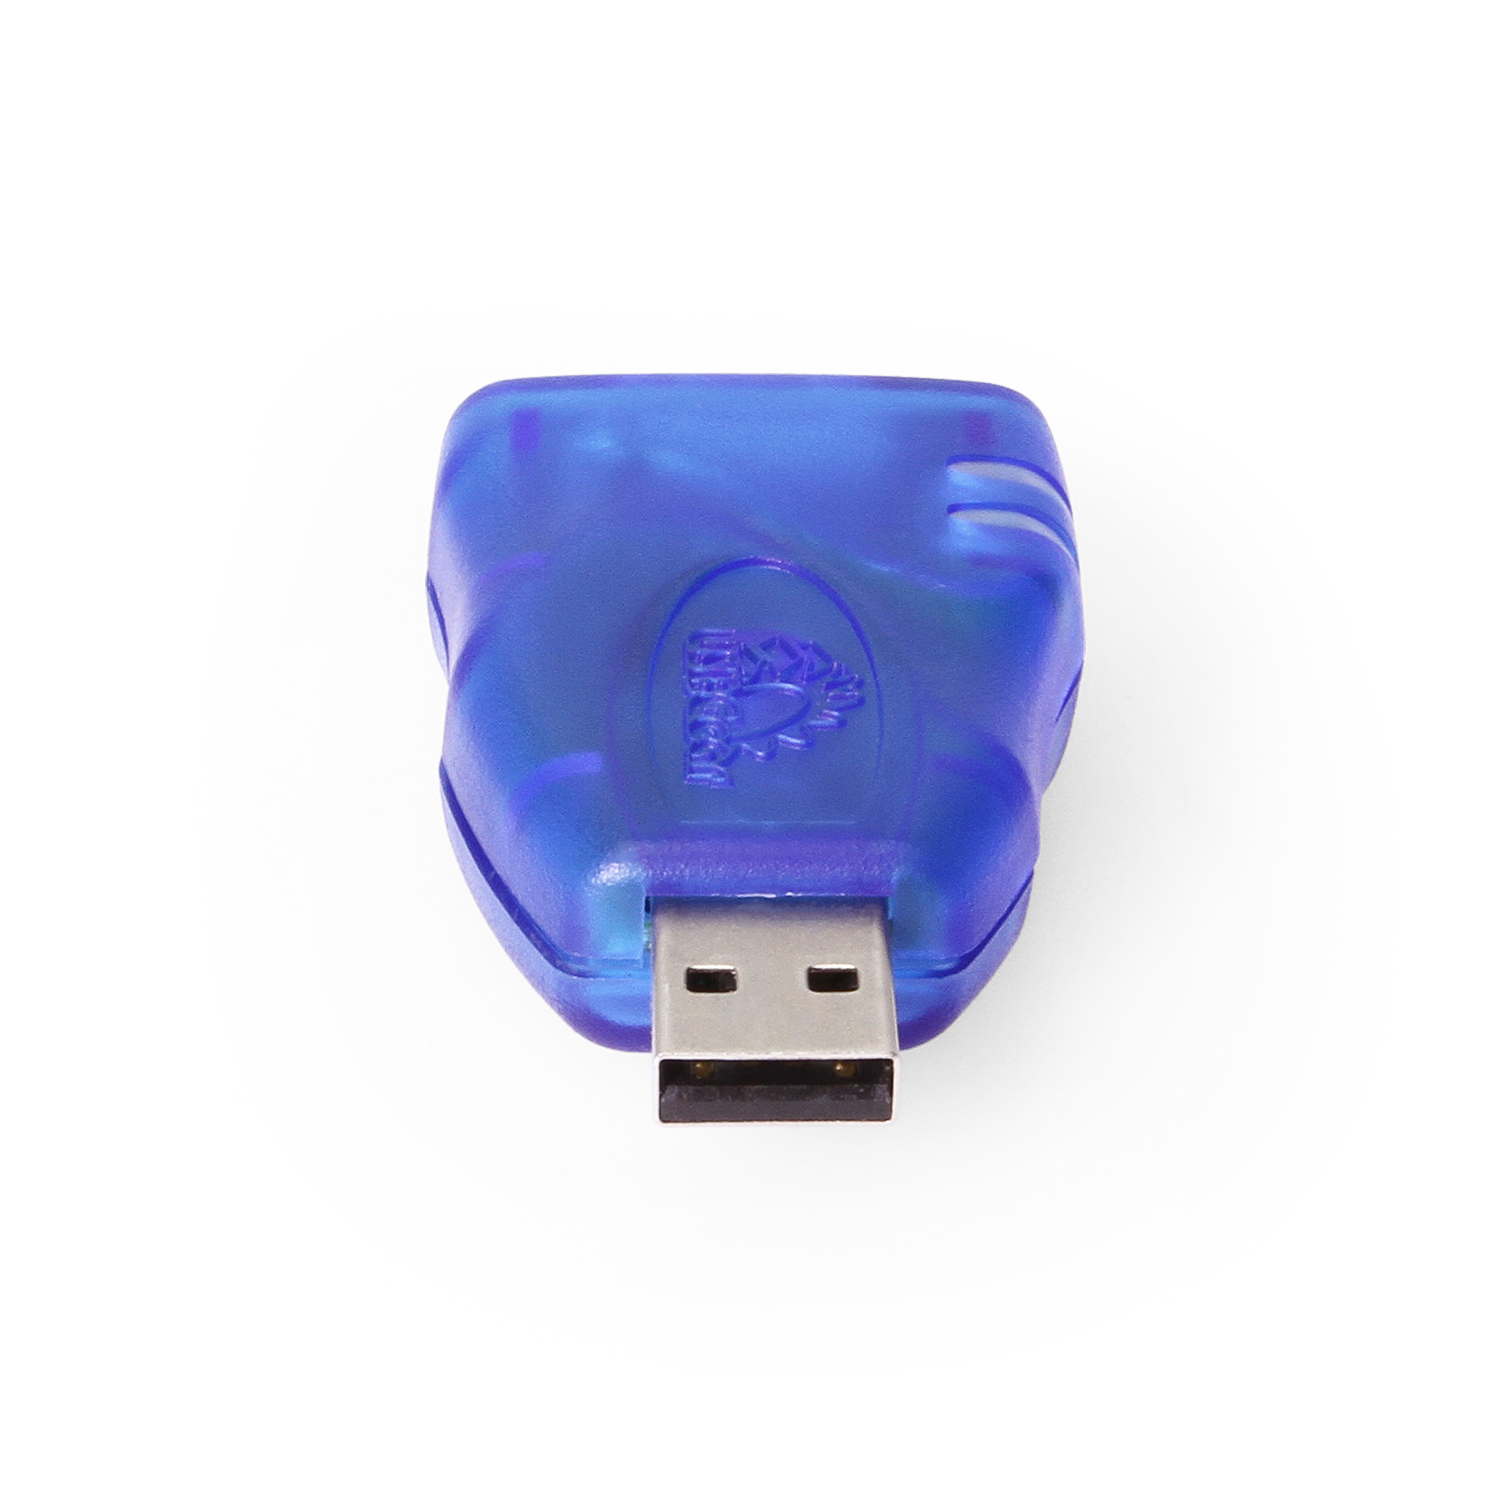 3D Printer Accessory EMMC-ADAPTER V2 Upgraded USB3.0 Card Reader